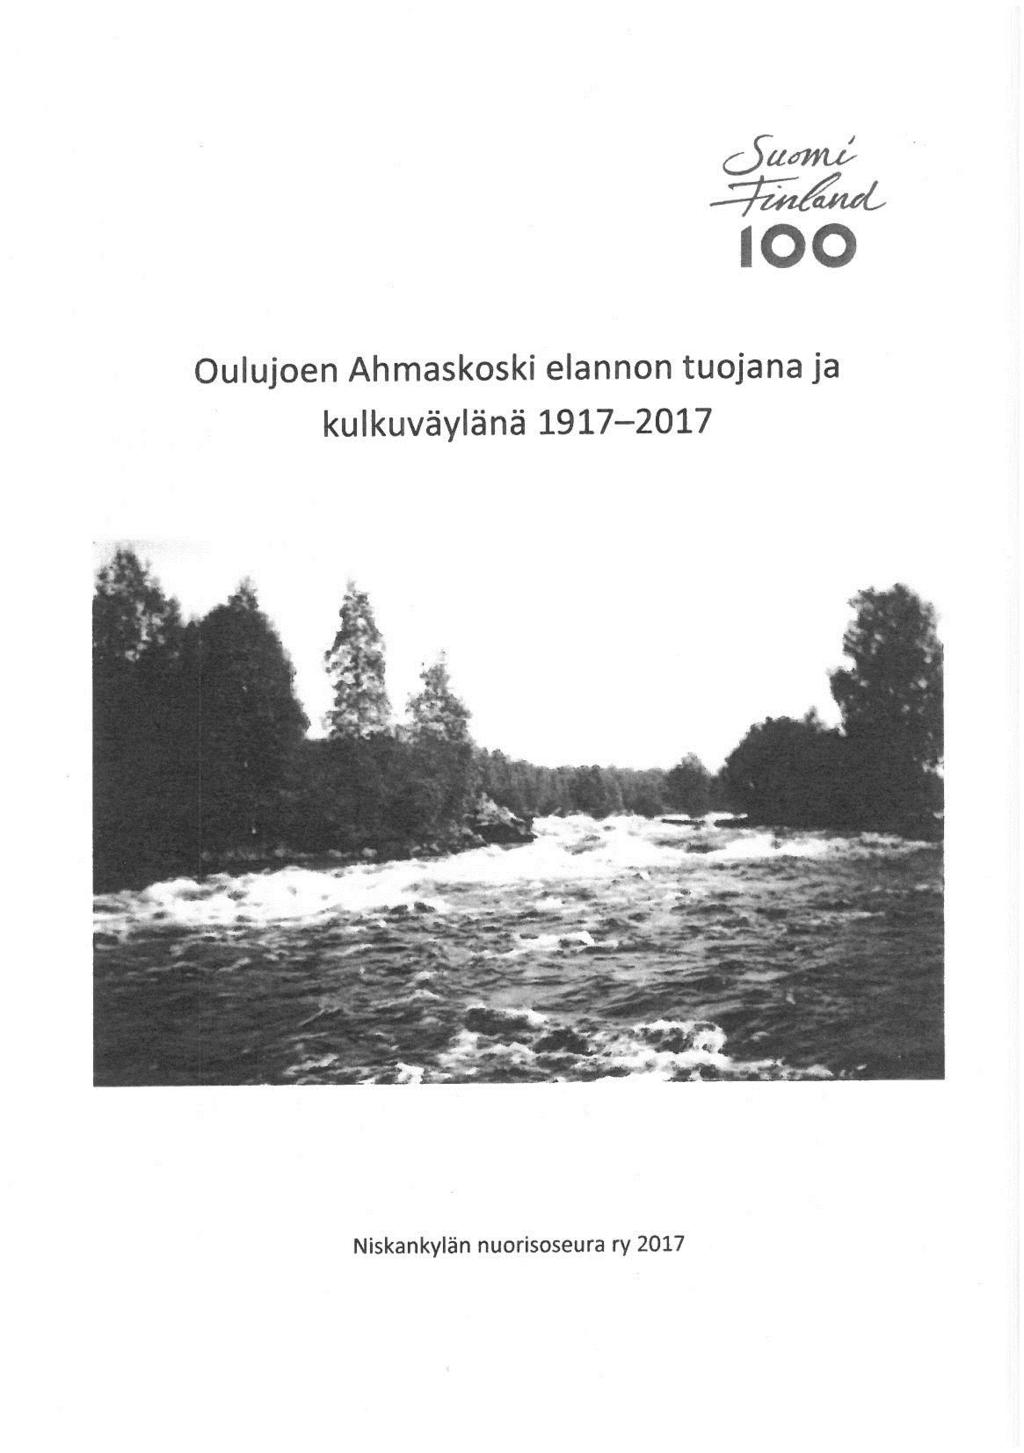 Anna-Liisa Seppänen Oulujoen Ahmaskoski elannon tuojana ja kulkuväylänä 1917-2017 (Niskankylän nuorisoseura, 2017) 24 sivua.